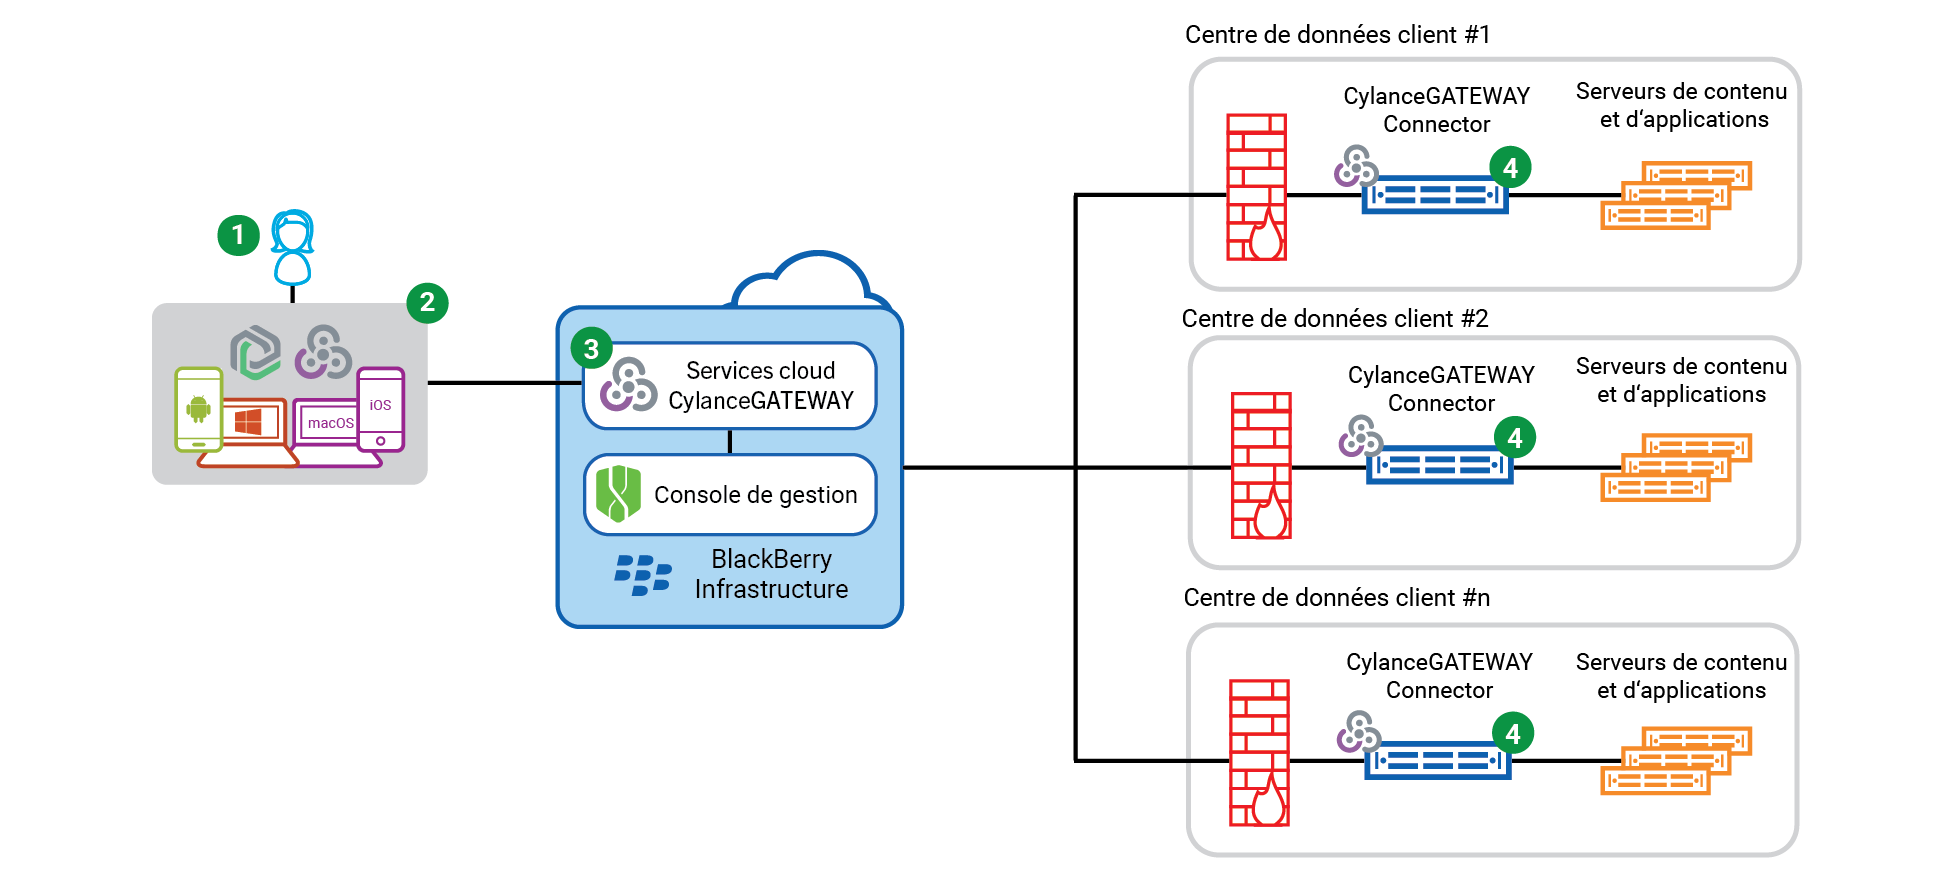 Cette image illustre le flux de données lors de l'utilisation de CylanceGATEWAY pour accéder à un serveur d'applications ou de contenu sur votre réseau privé avec une configuration de réseau privé multiple.